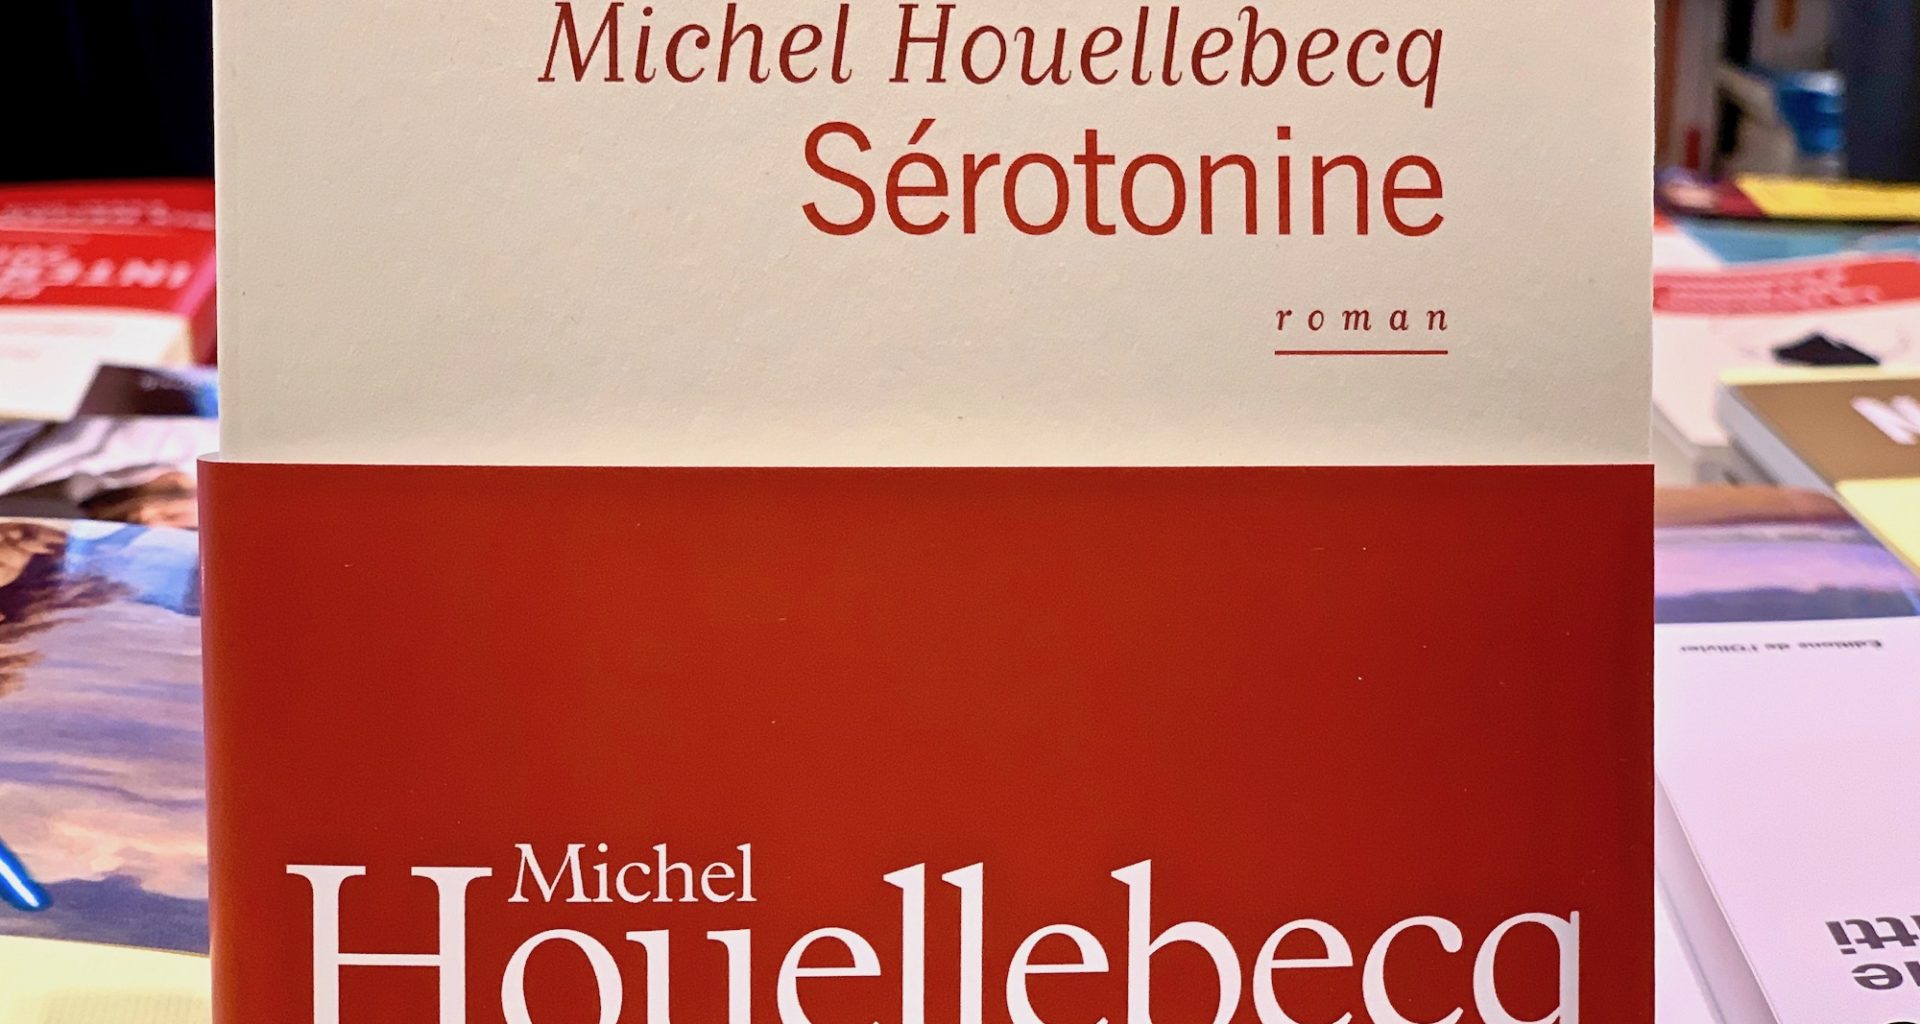 Houllebecq et Sérotonine synonyme de Soporifique